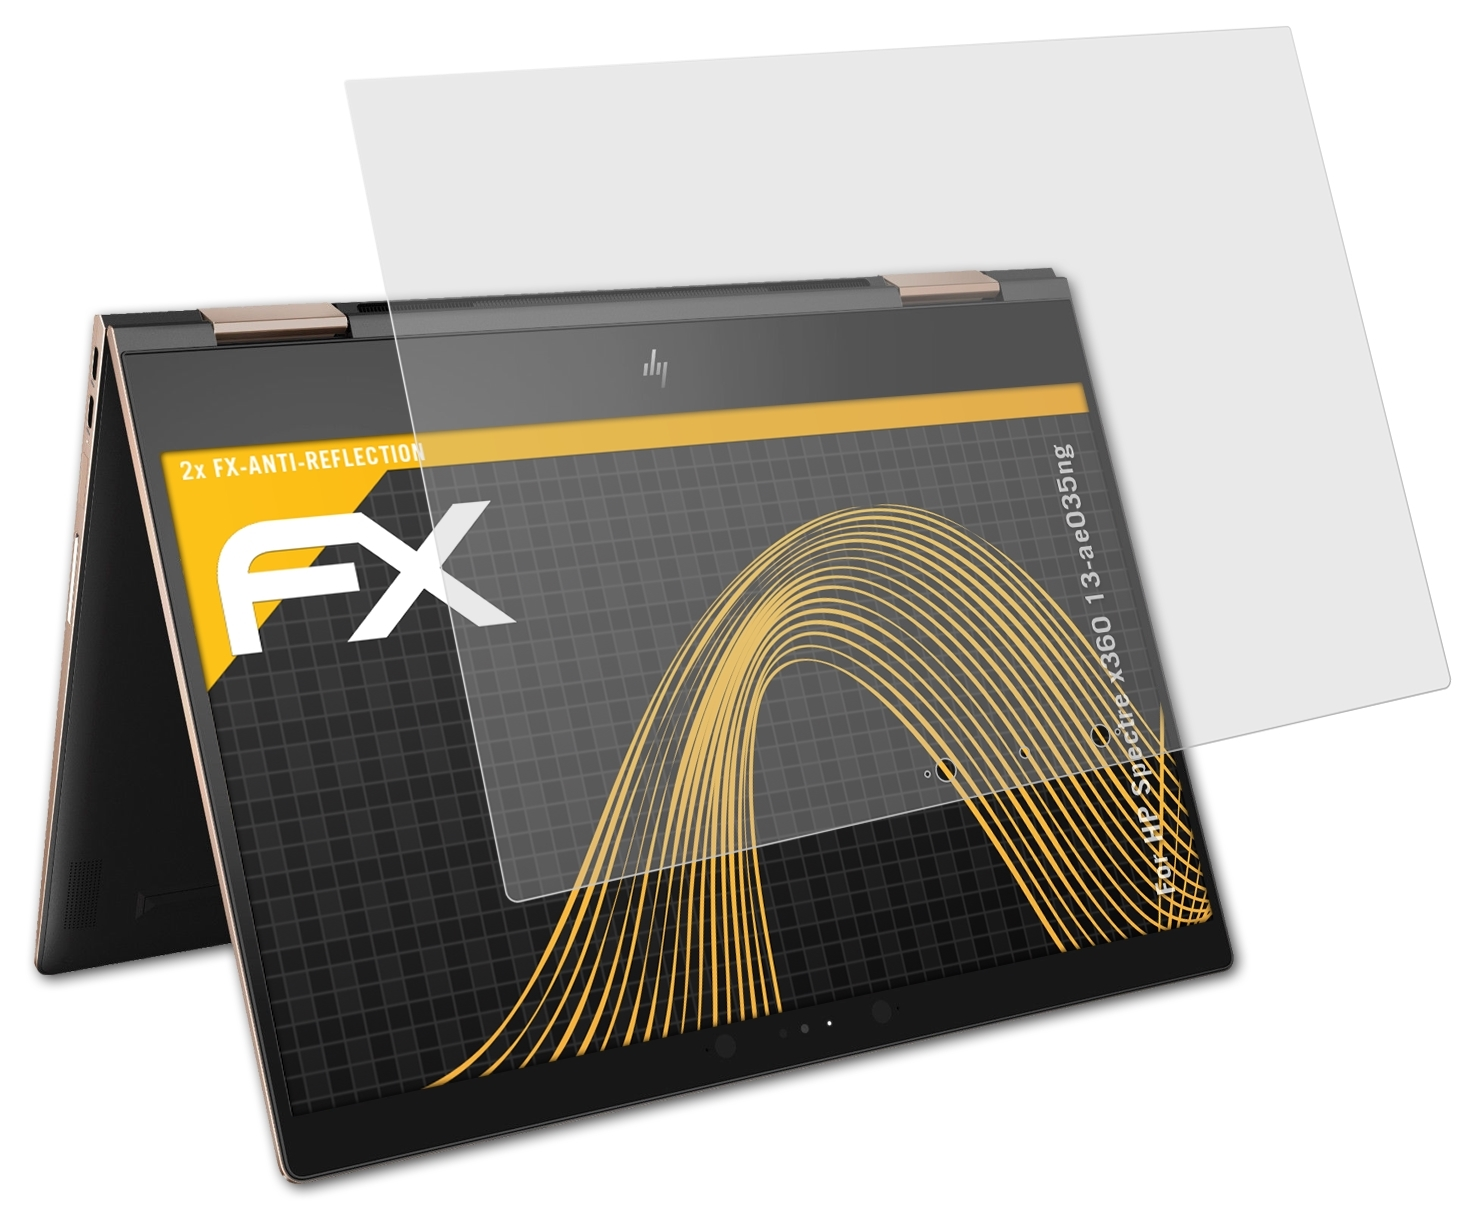 2x ATFOLIX x360 Spectre Displayschutz(für HP FX-Antireflex 13-ae035ng)